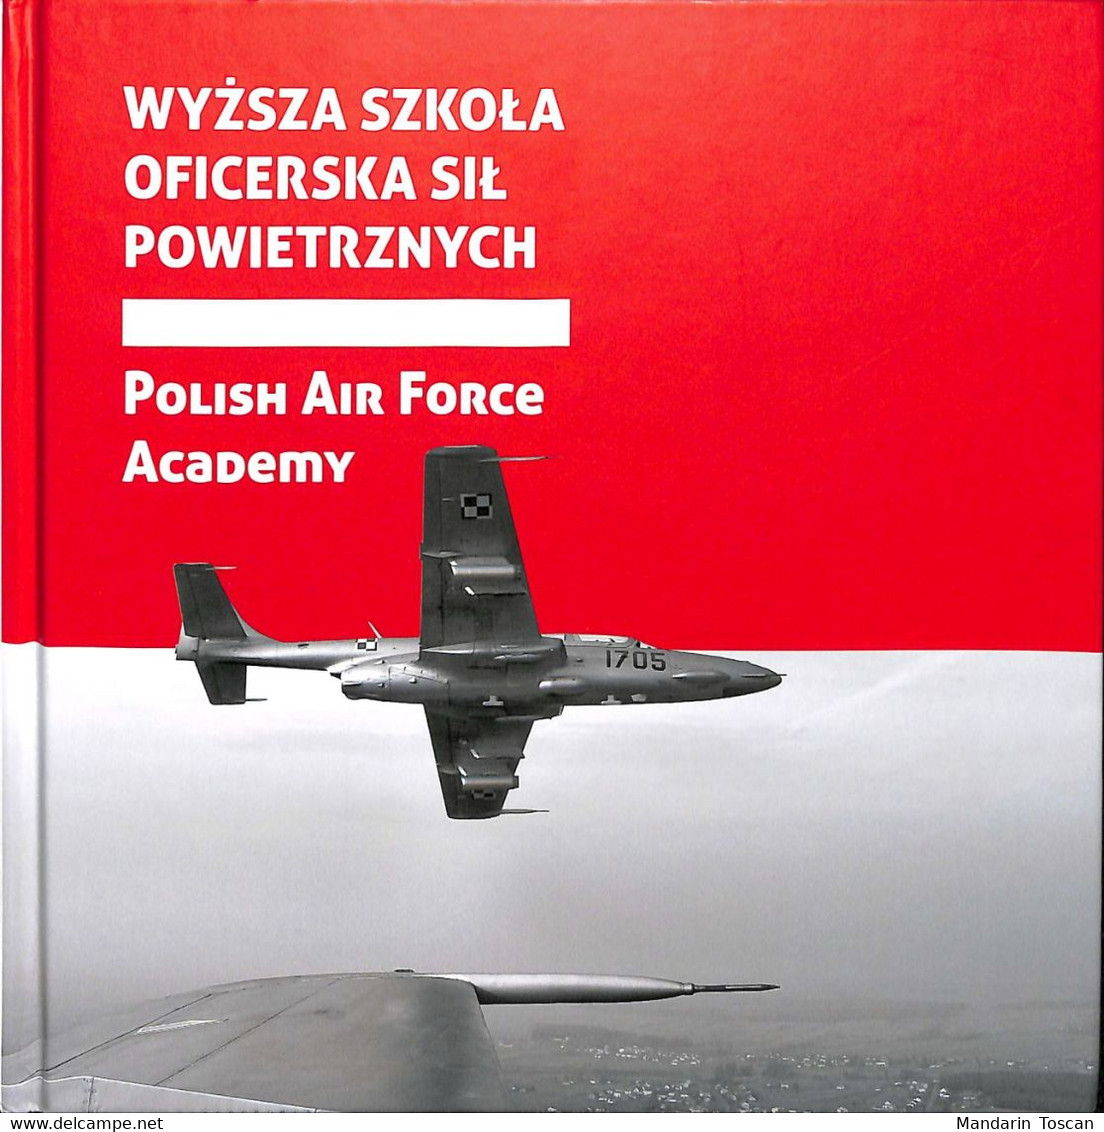 Polish Air Force Academy - Wyzsza Szkola Oficerska Sil Powietrznych (2013) - Buitenlandse Legers